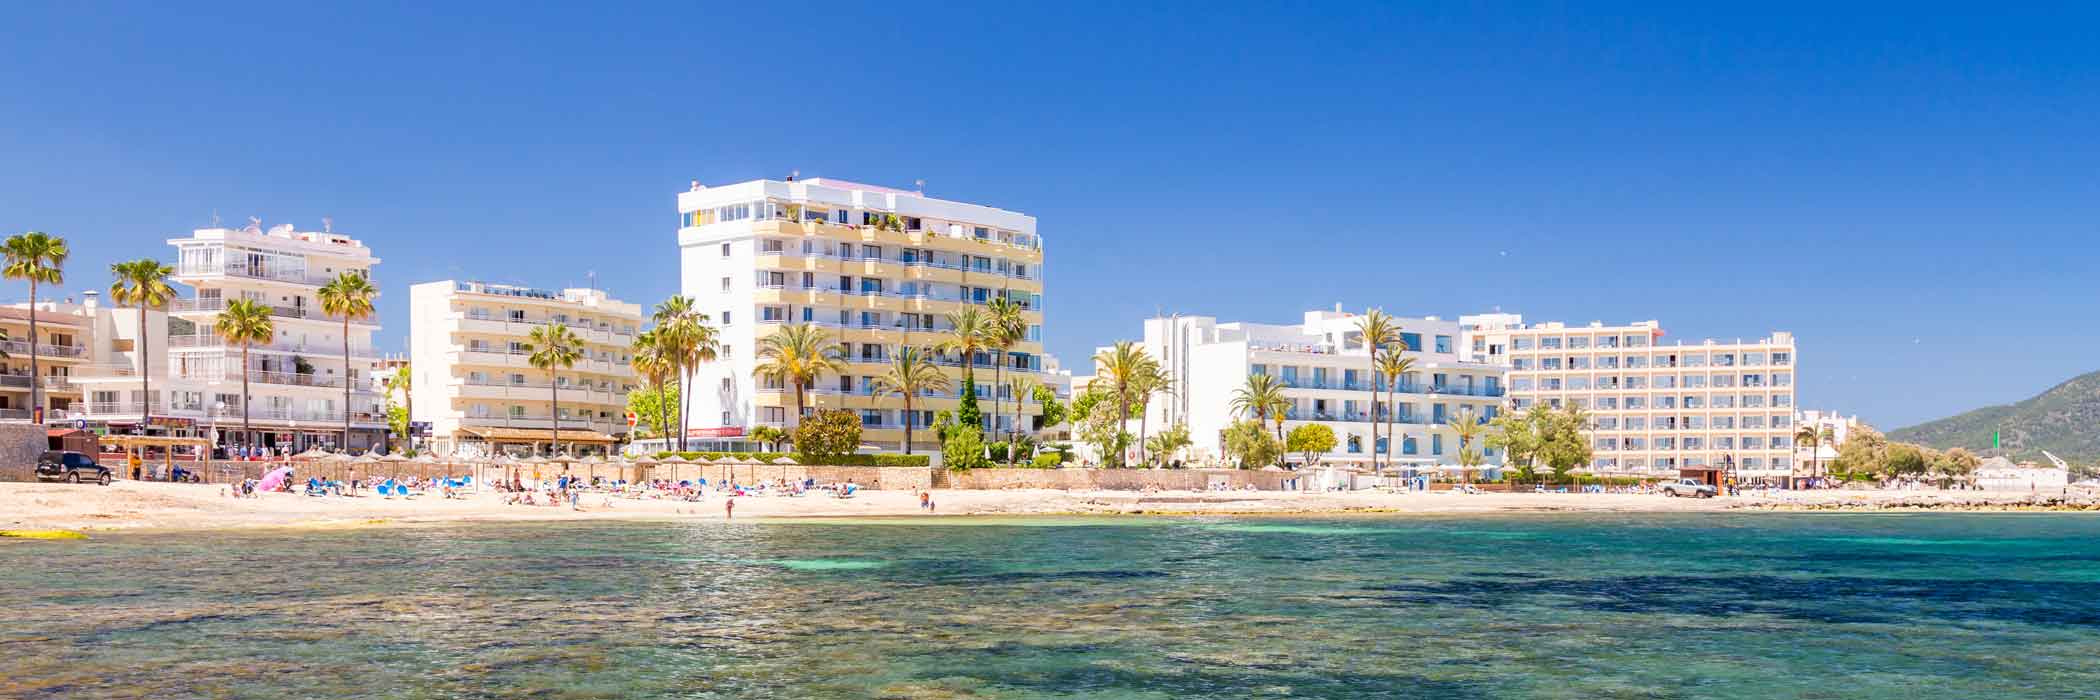 Cheap Holidays To Majorca